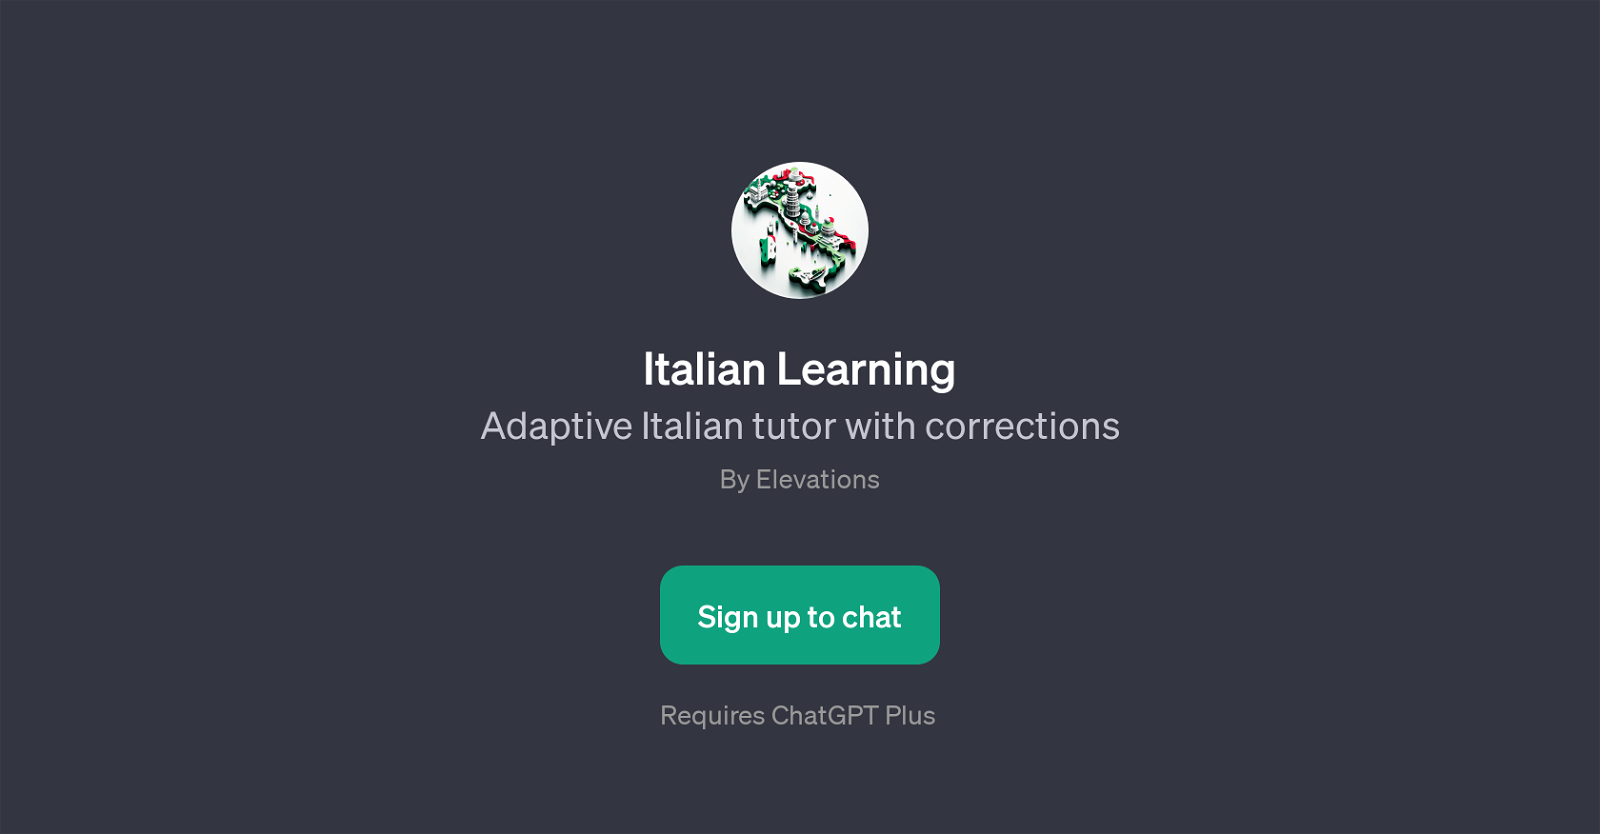 Italian Learning website